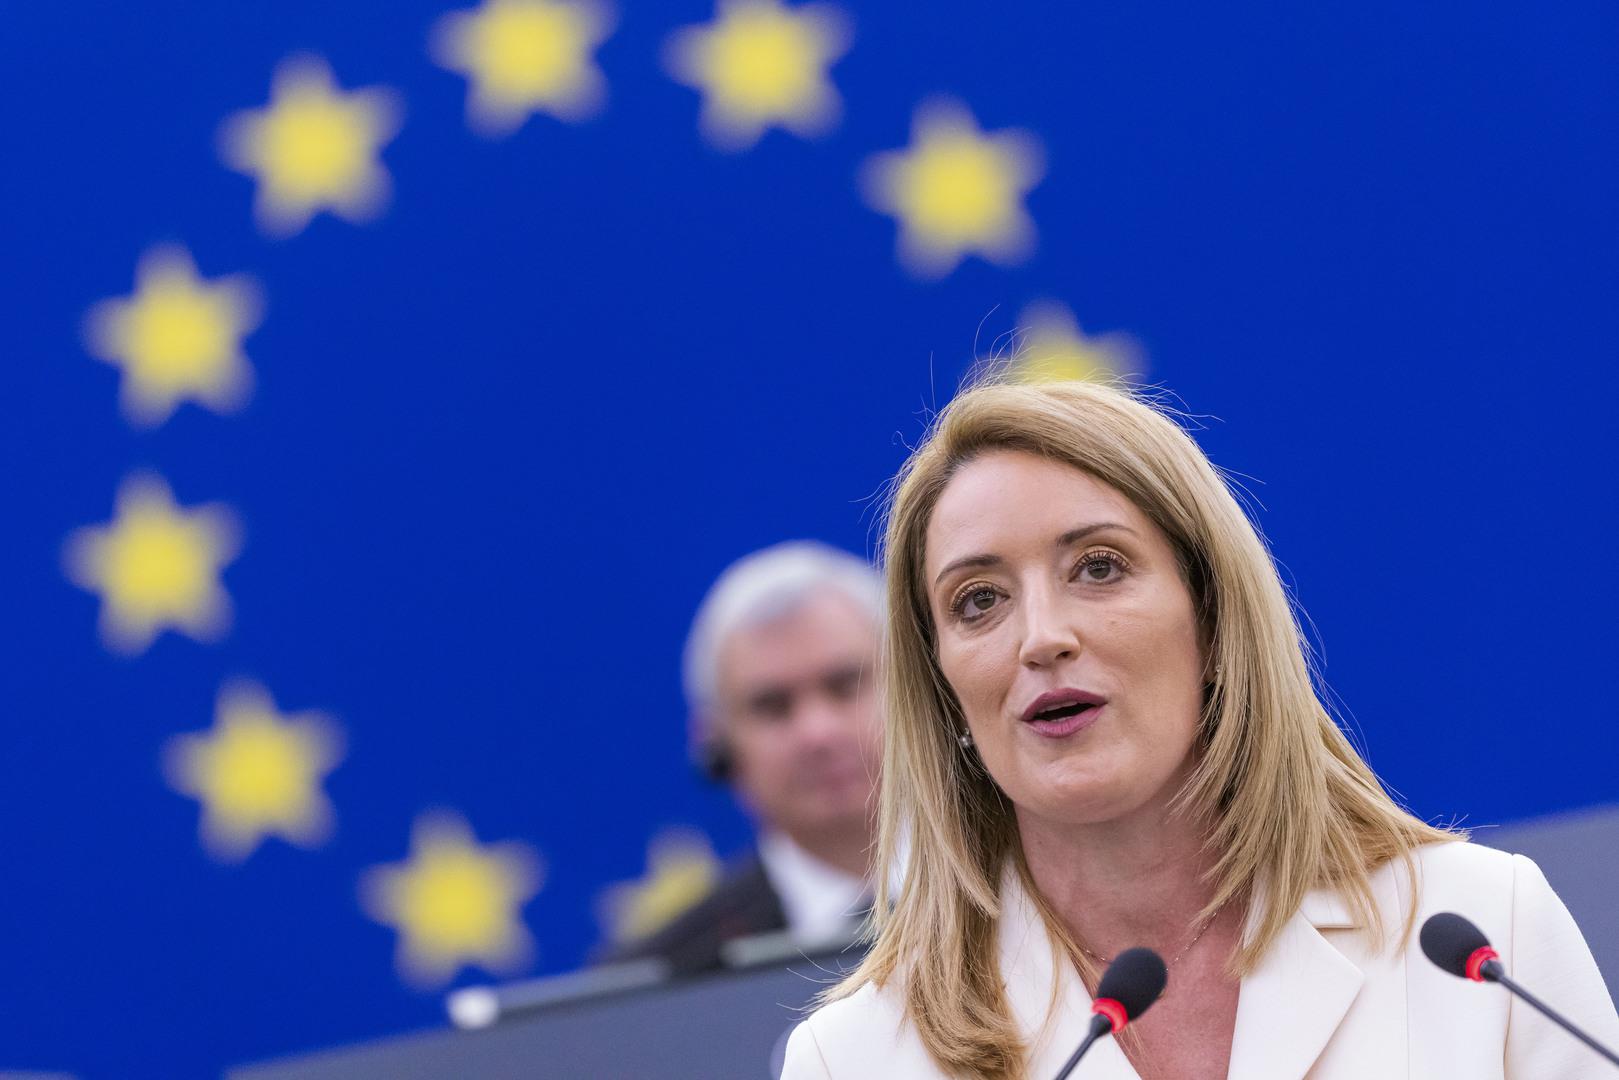 La Maltaise Roberta Metsola, nouvelle présidente du Parlement européen